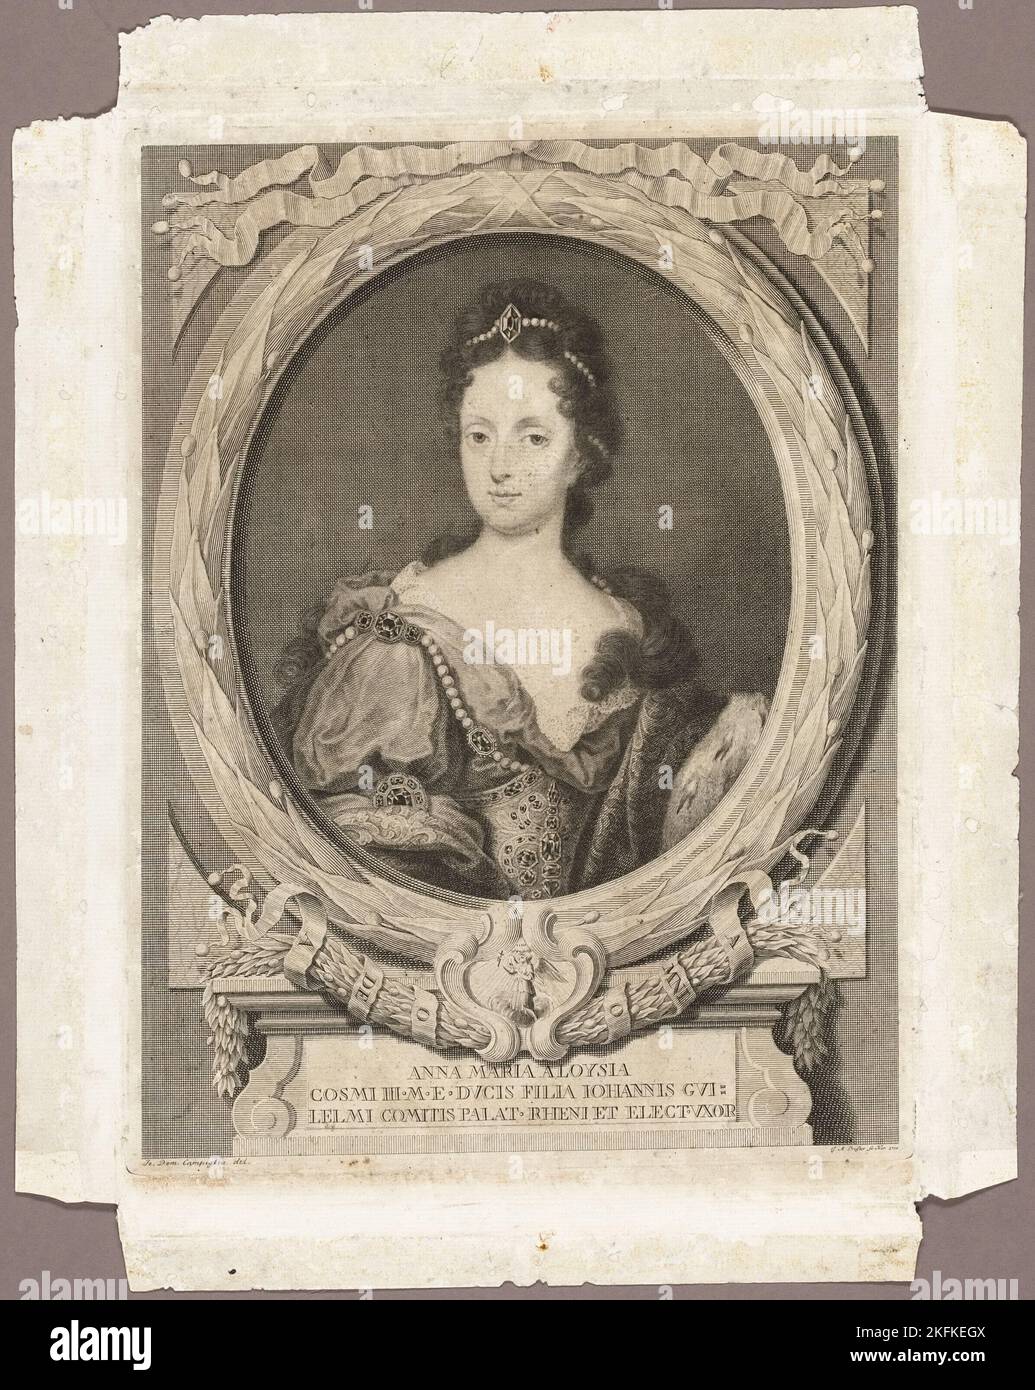 Anna Maria Luisa, 1730; veröffentlicht 1761. Italienische Adlige, Tochter von Cosimo III. De' Medici, Großherzog der Toskana; Ehefrau von Johann Wilhelm, Kurfürst der Pfalz. Stockfoto